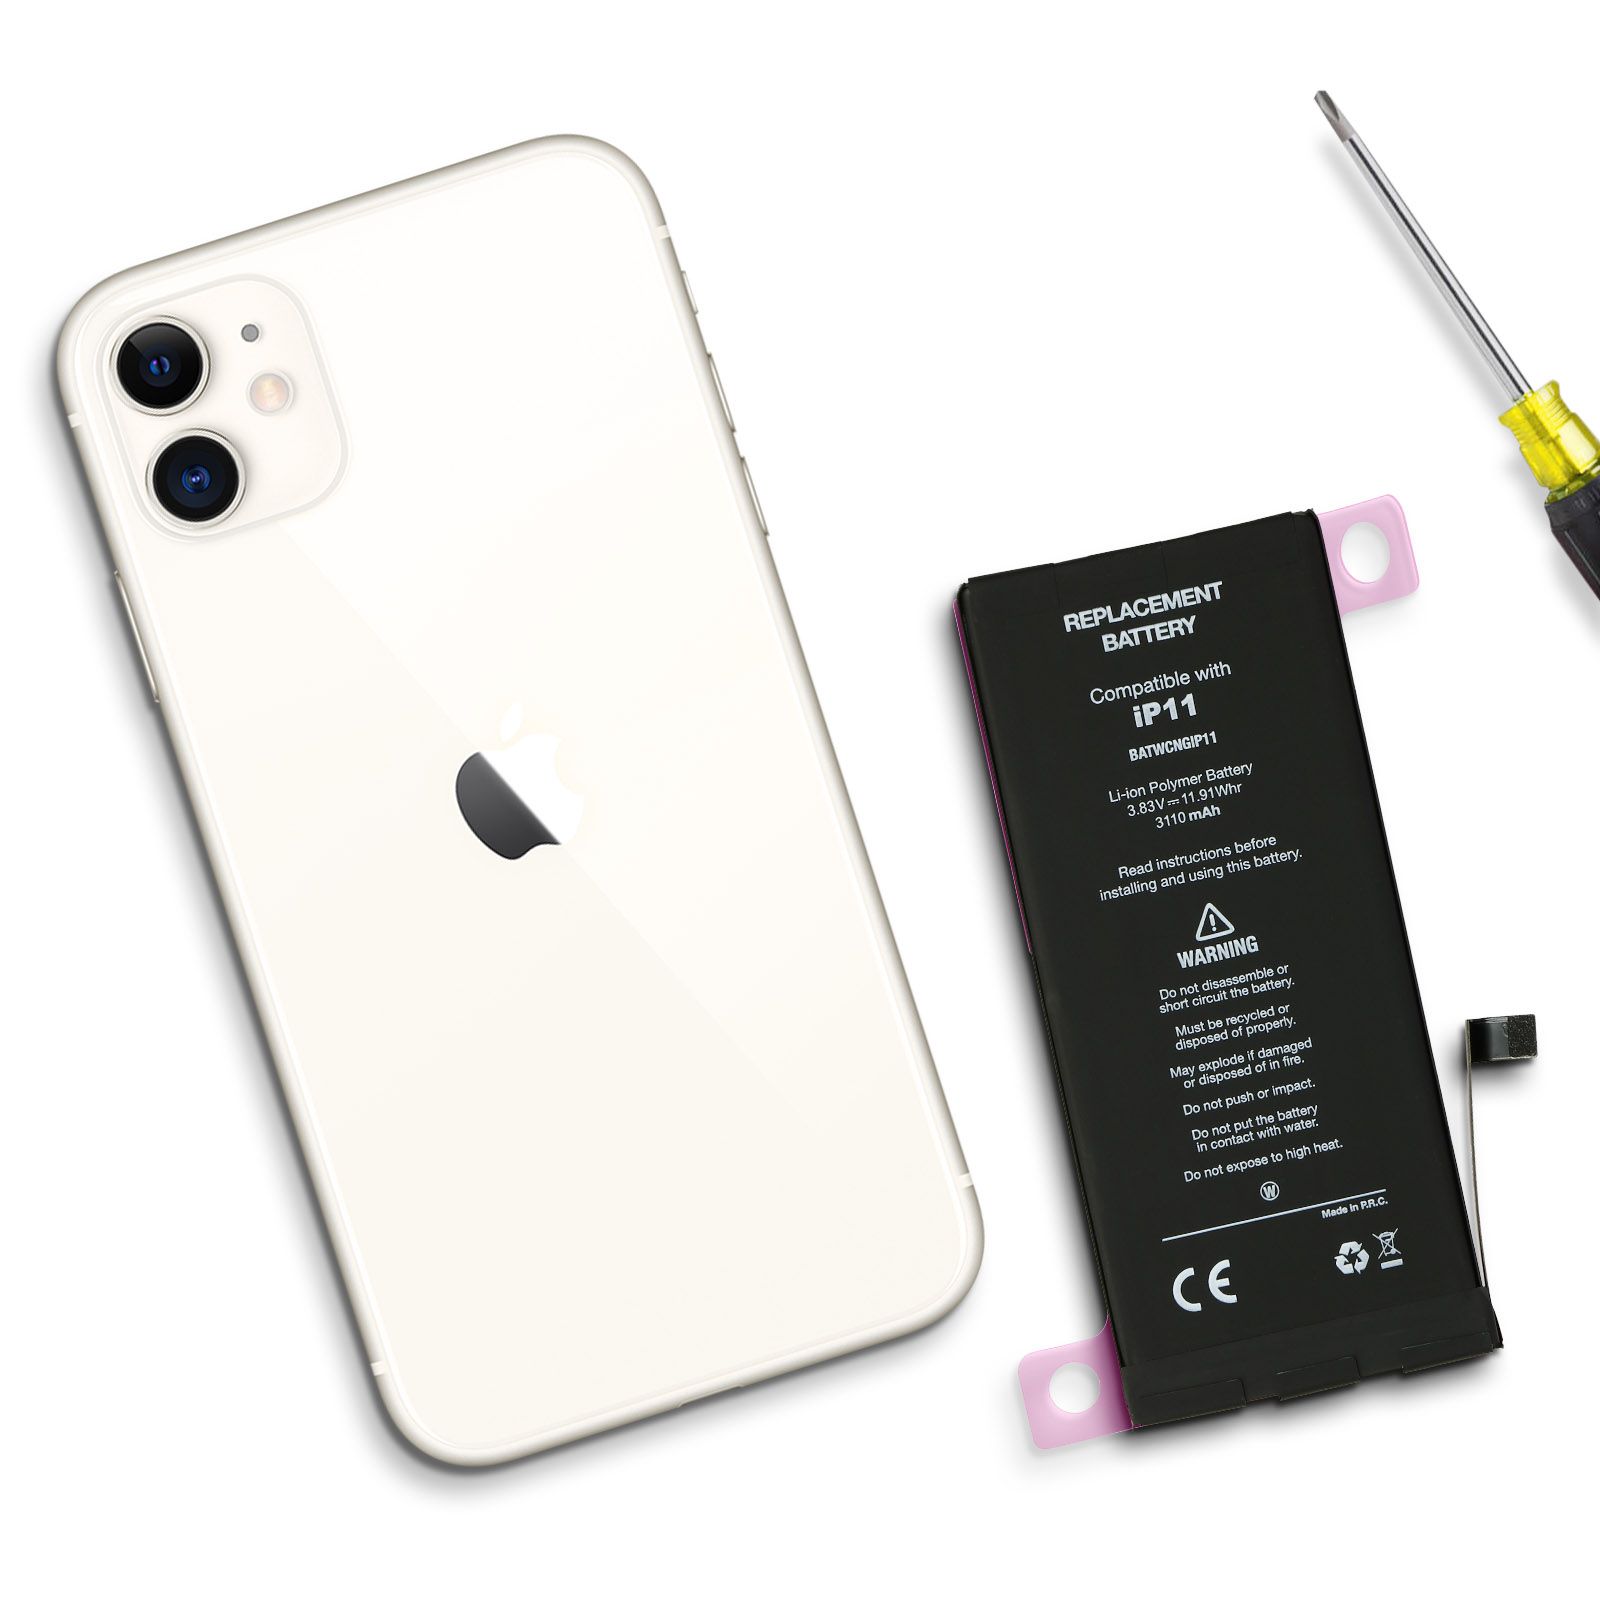 Batterie iPhone 11 3110mAh Compatible - Français